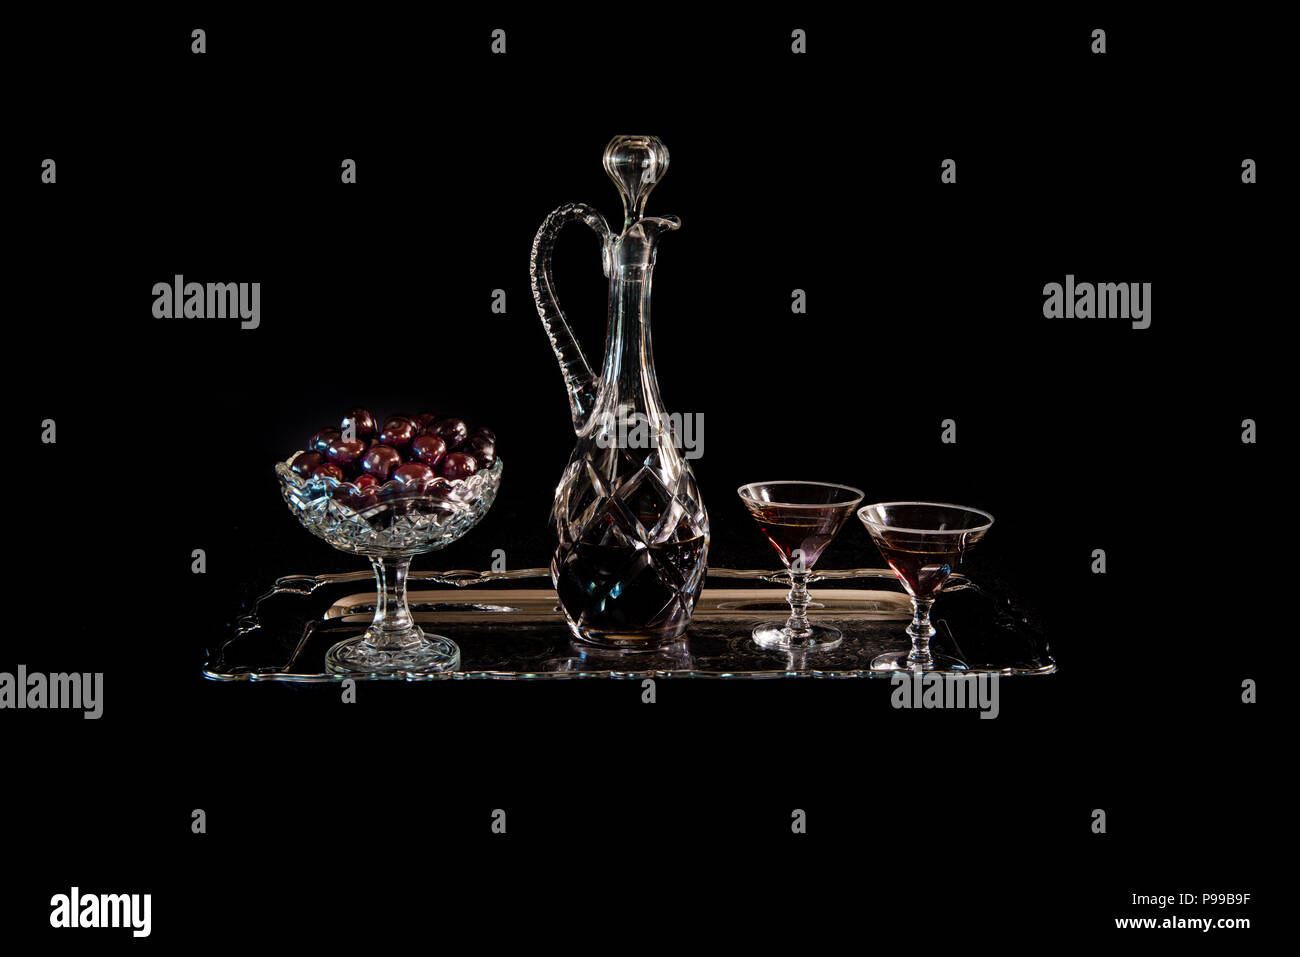 Las cerezas en un cuenco de cristal antiguo y una garrafa de Cristal y vasos con brandy cherry en un plato de plata con un fondo negro, un bodegón. Foto de stock